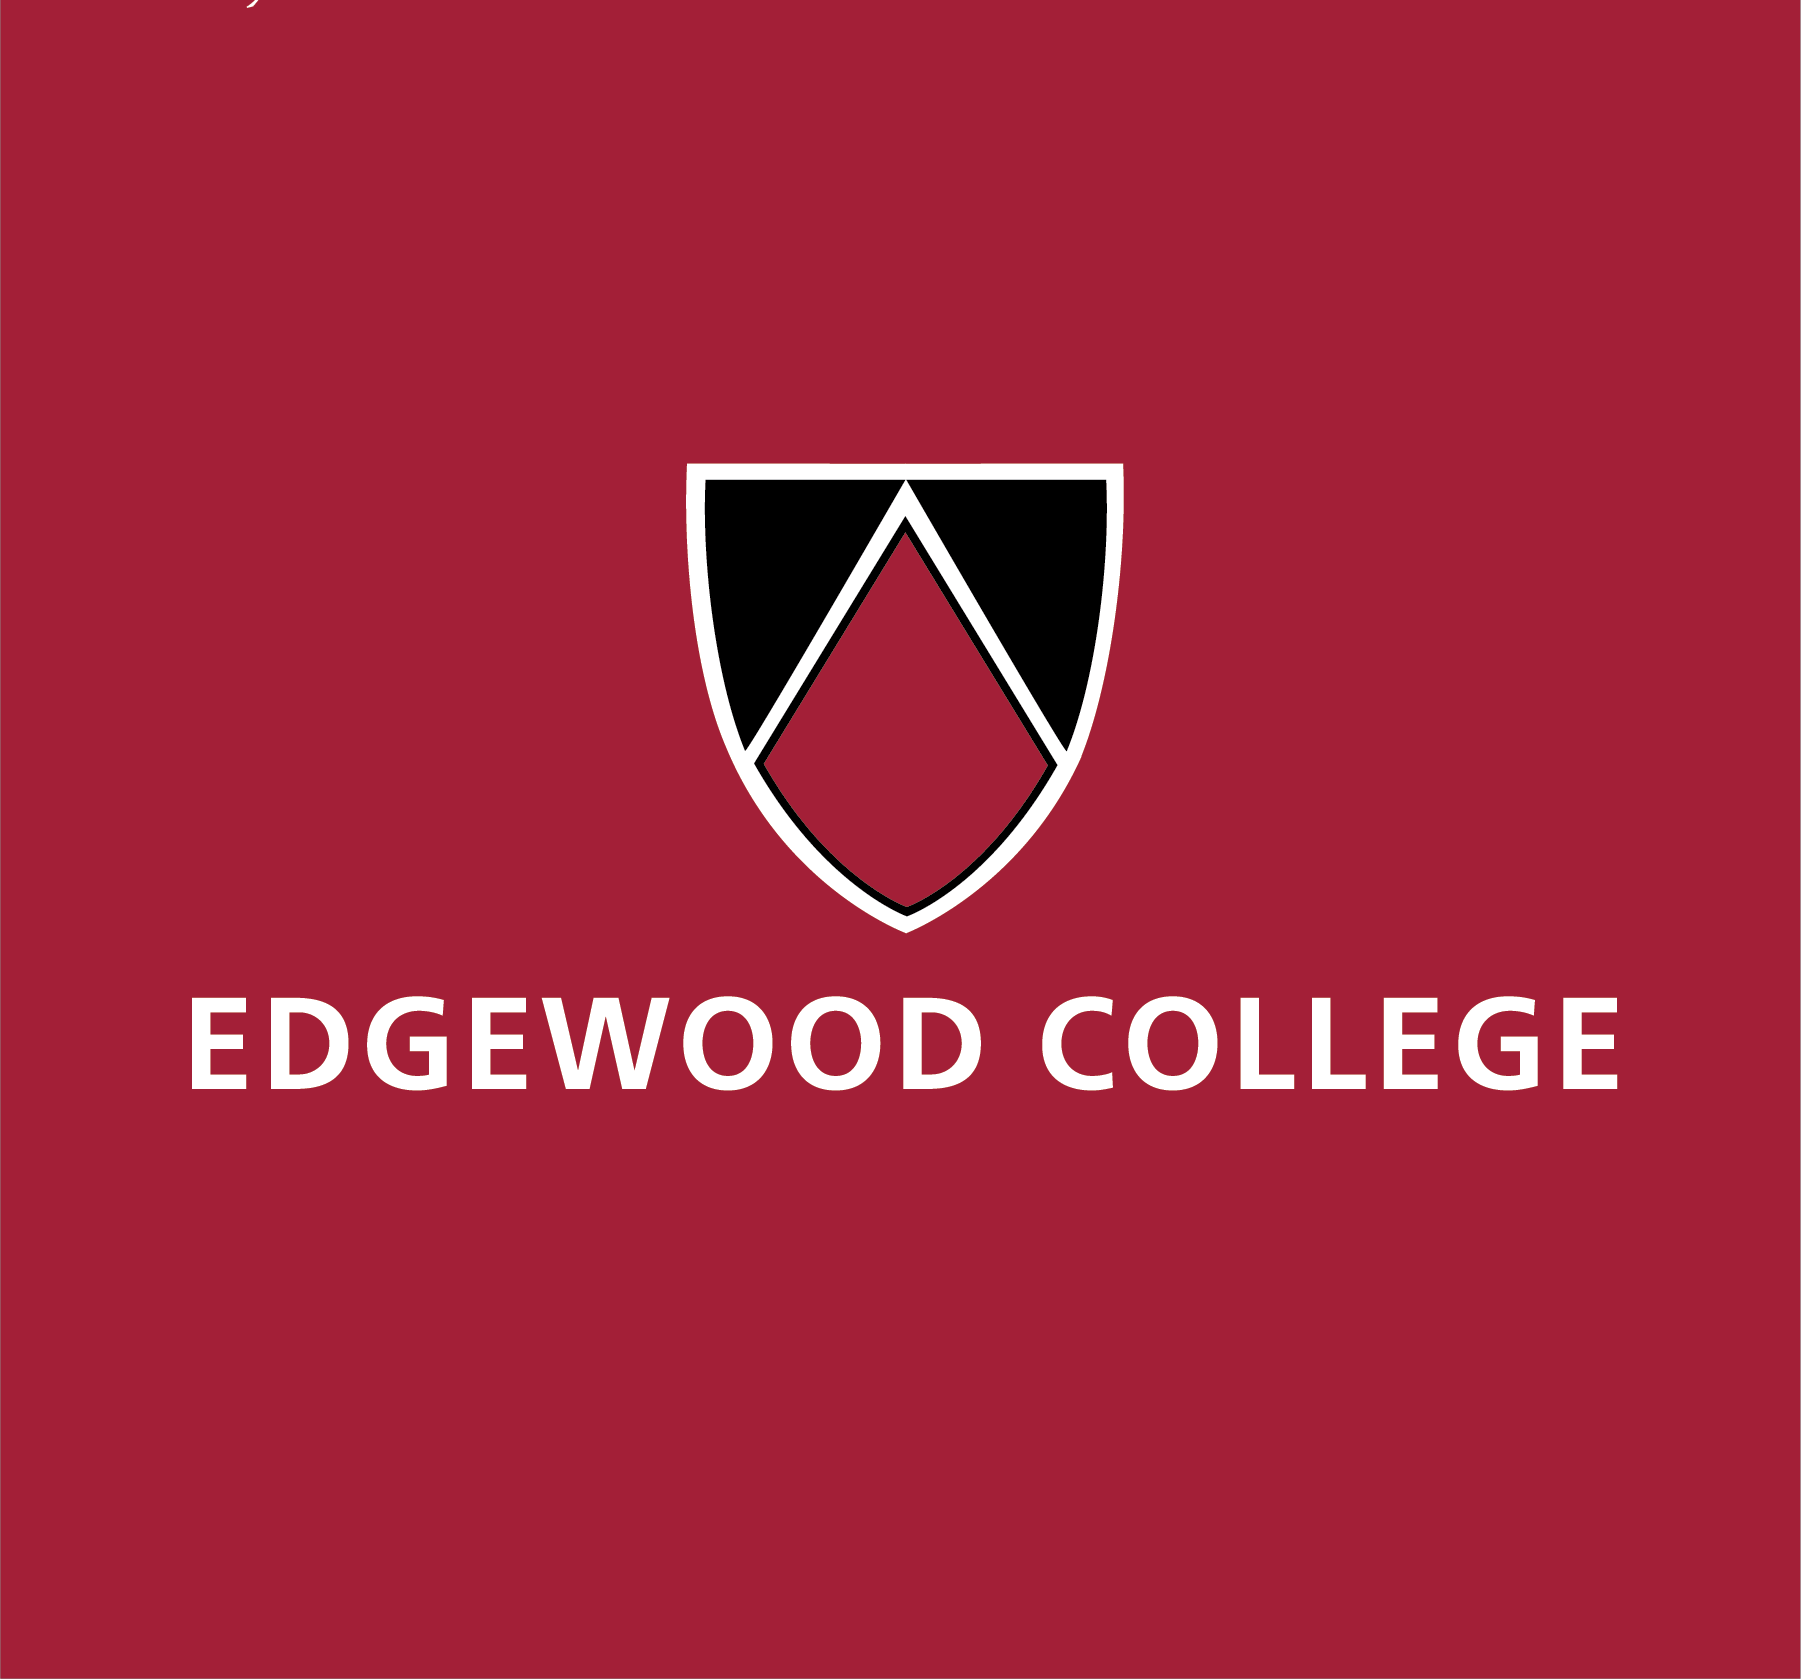 Edgewood College